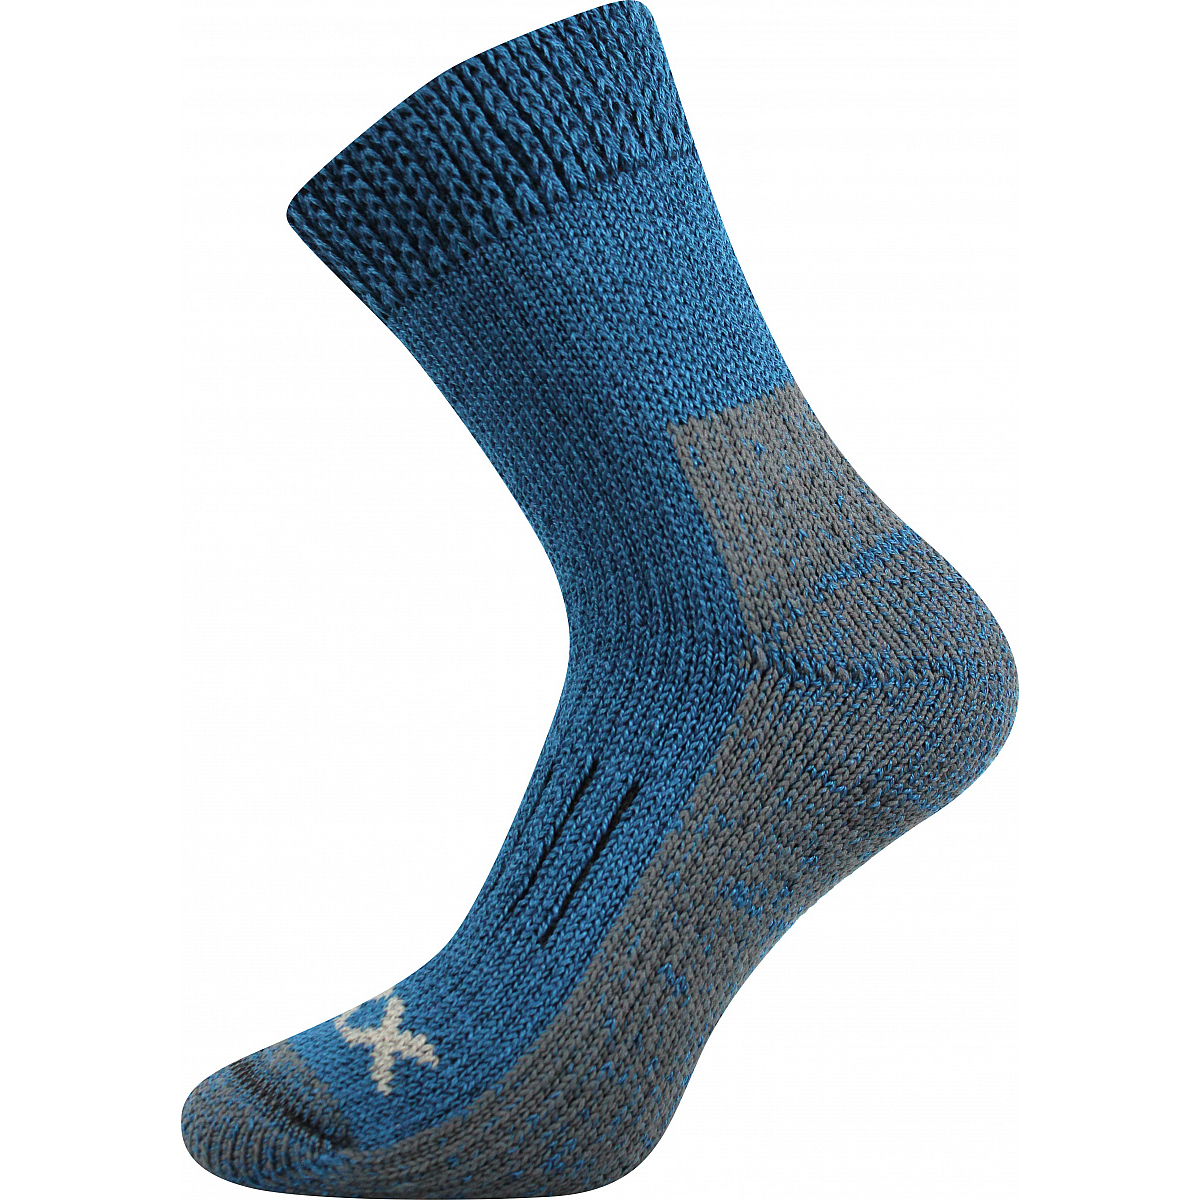 Extra teplé vlněné ponožky Voxx Alpin - modré-šedé, 43-46